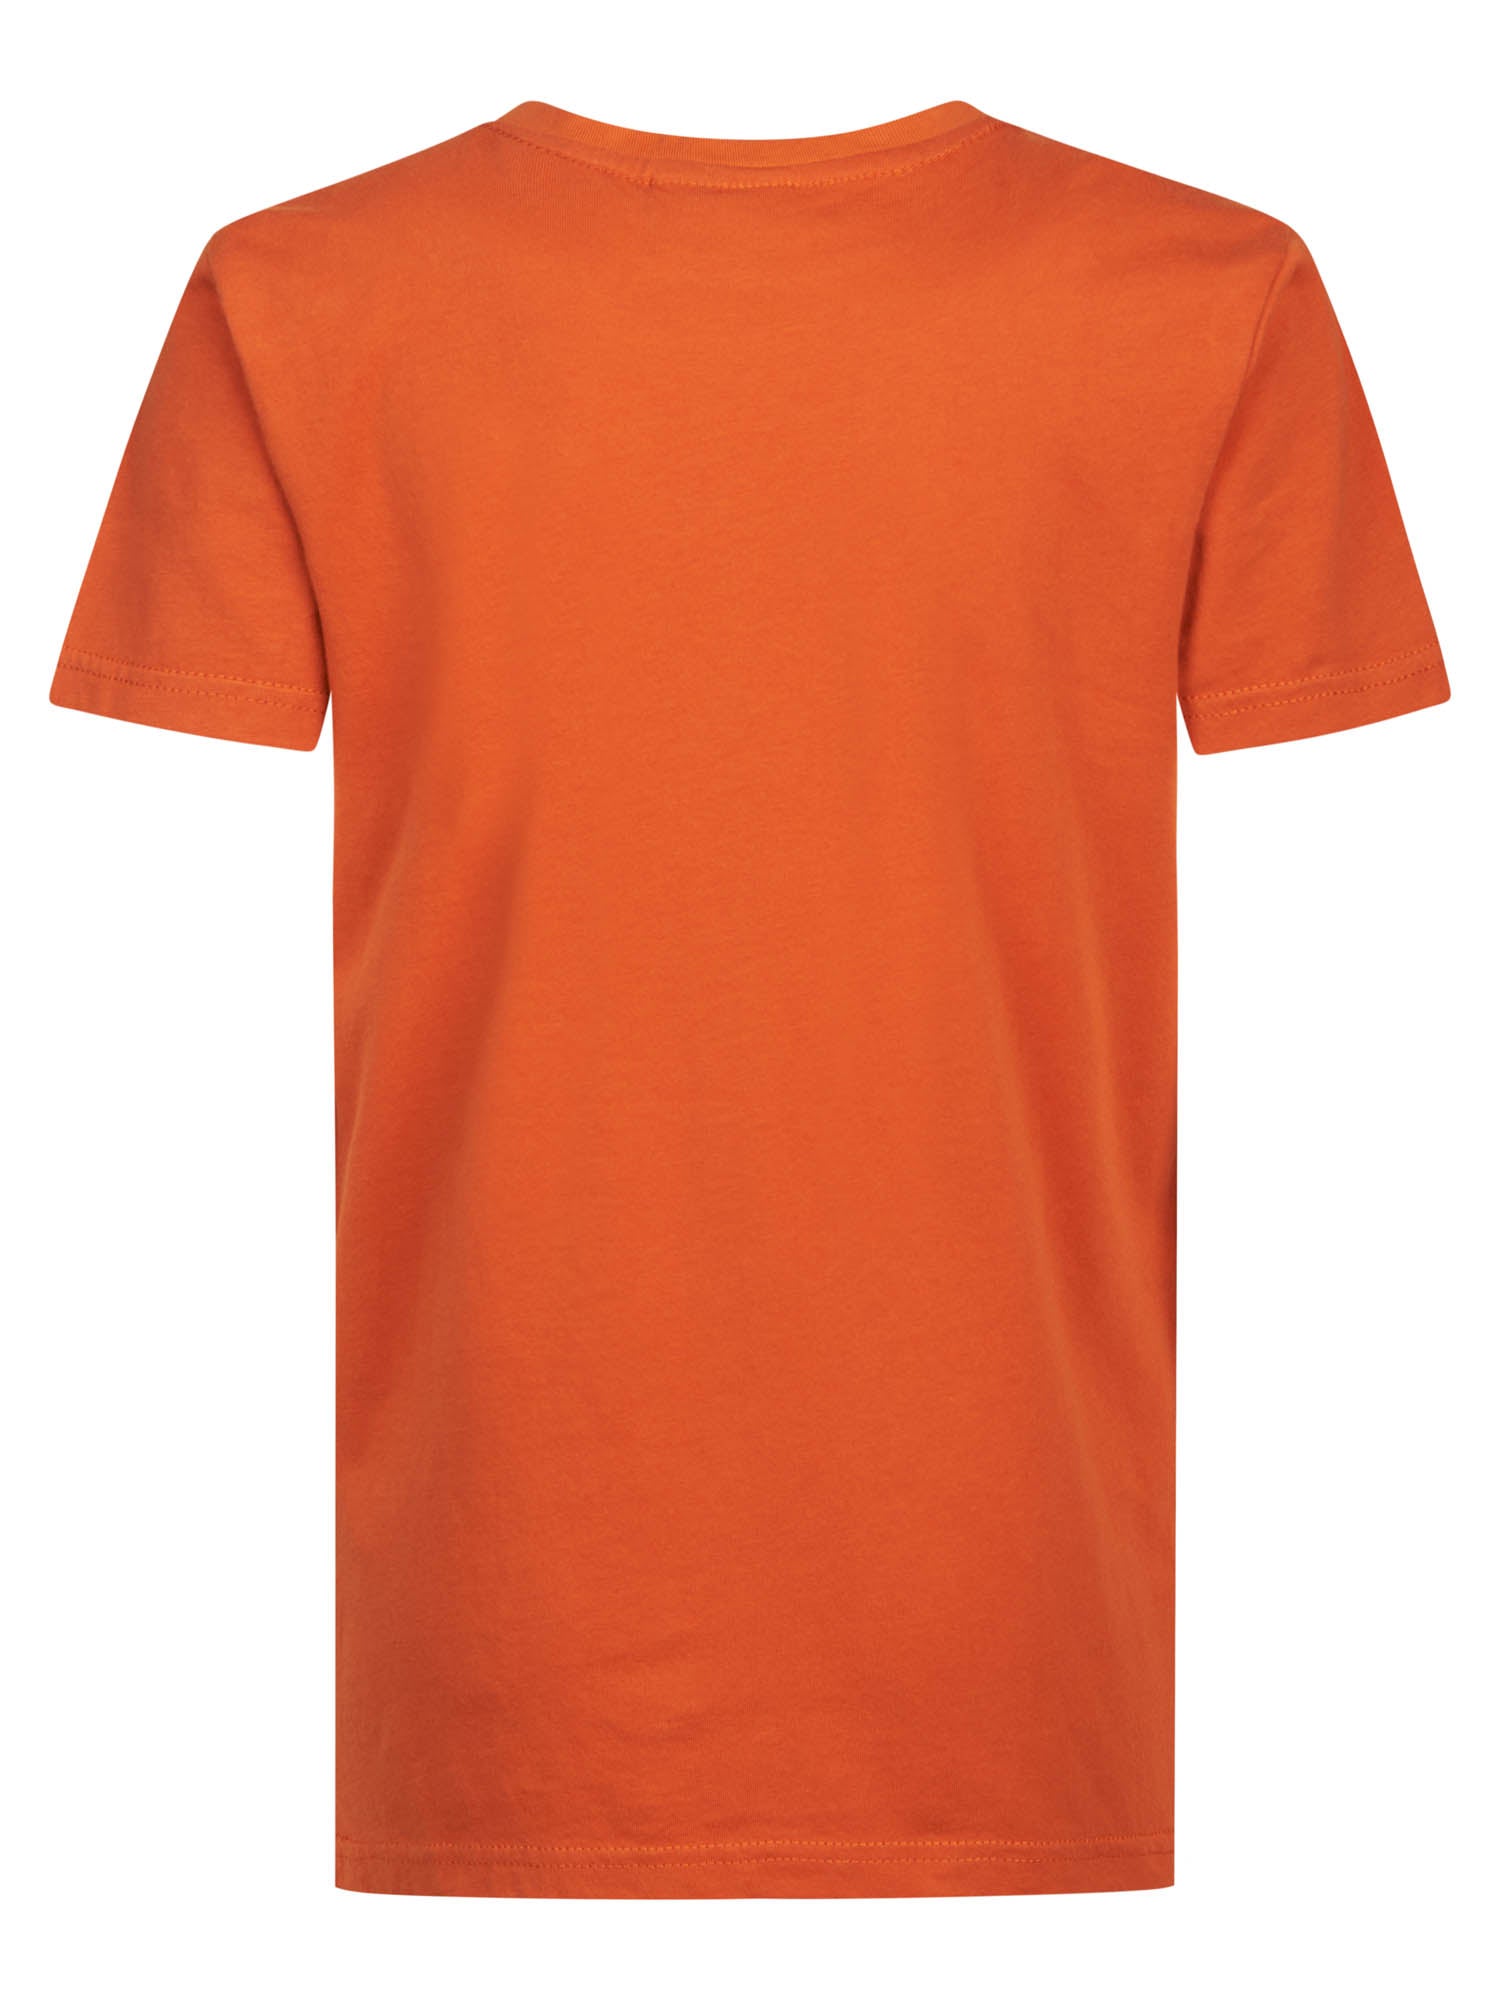 Jongens T-Shirt SS Classic Print van Petrol in de kleur Orange Rust in maat 164.